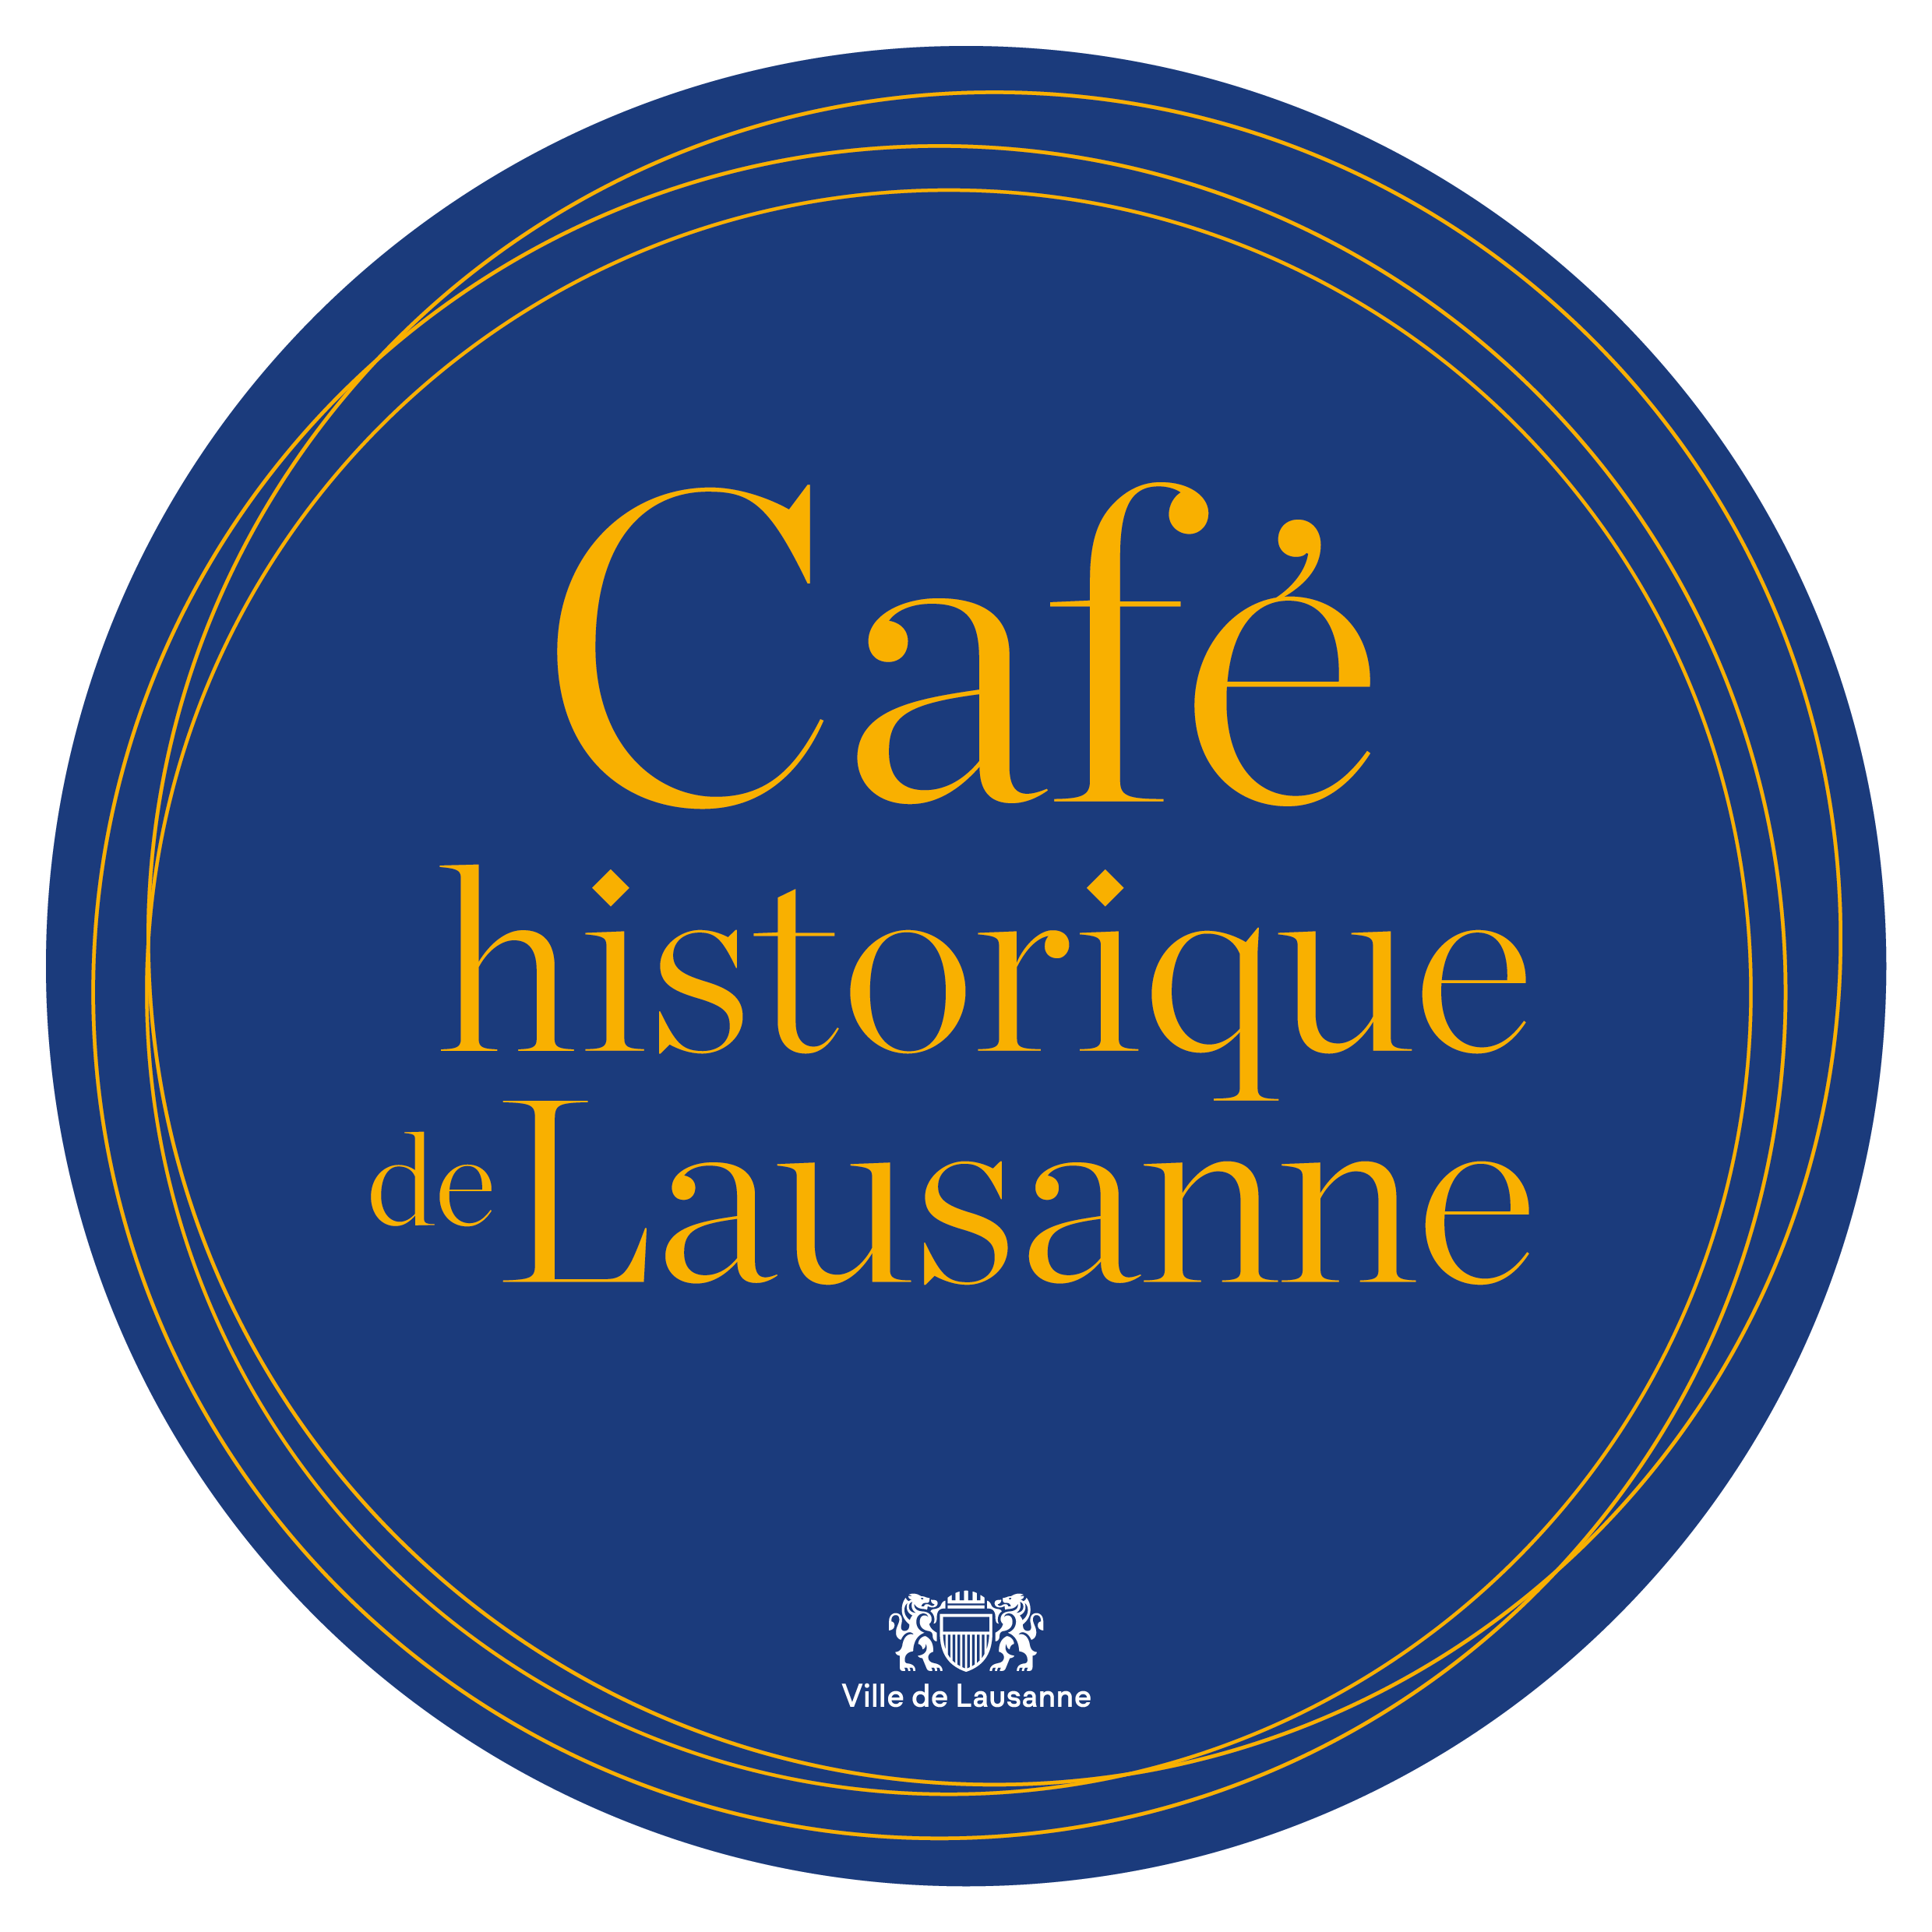 Cafe historique Lausanne logo rond 20cm